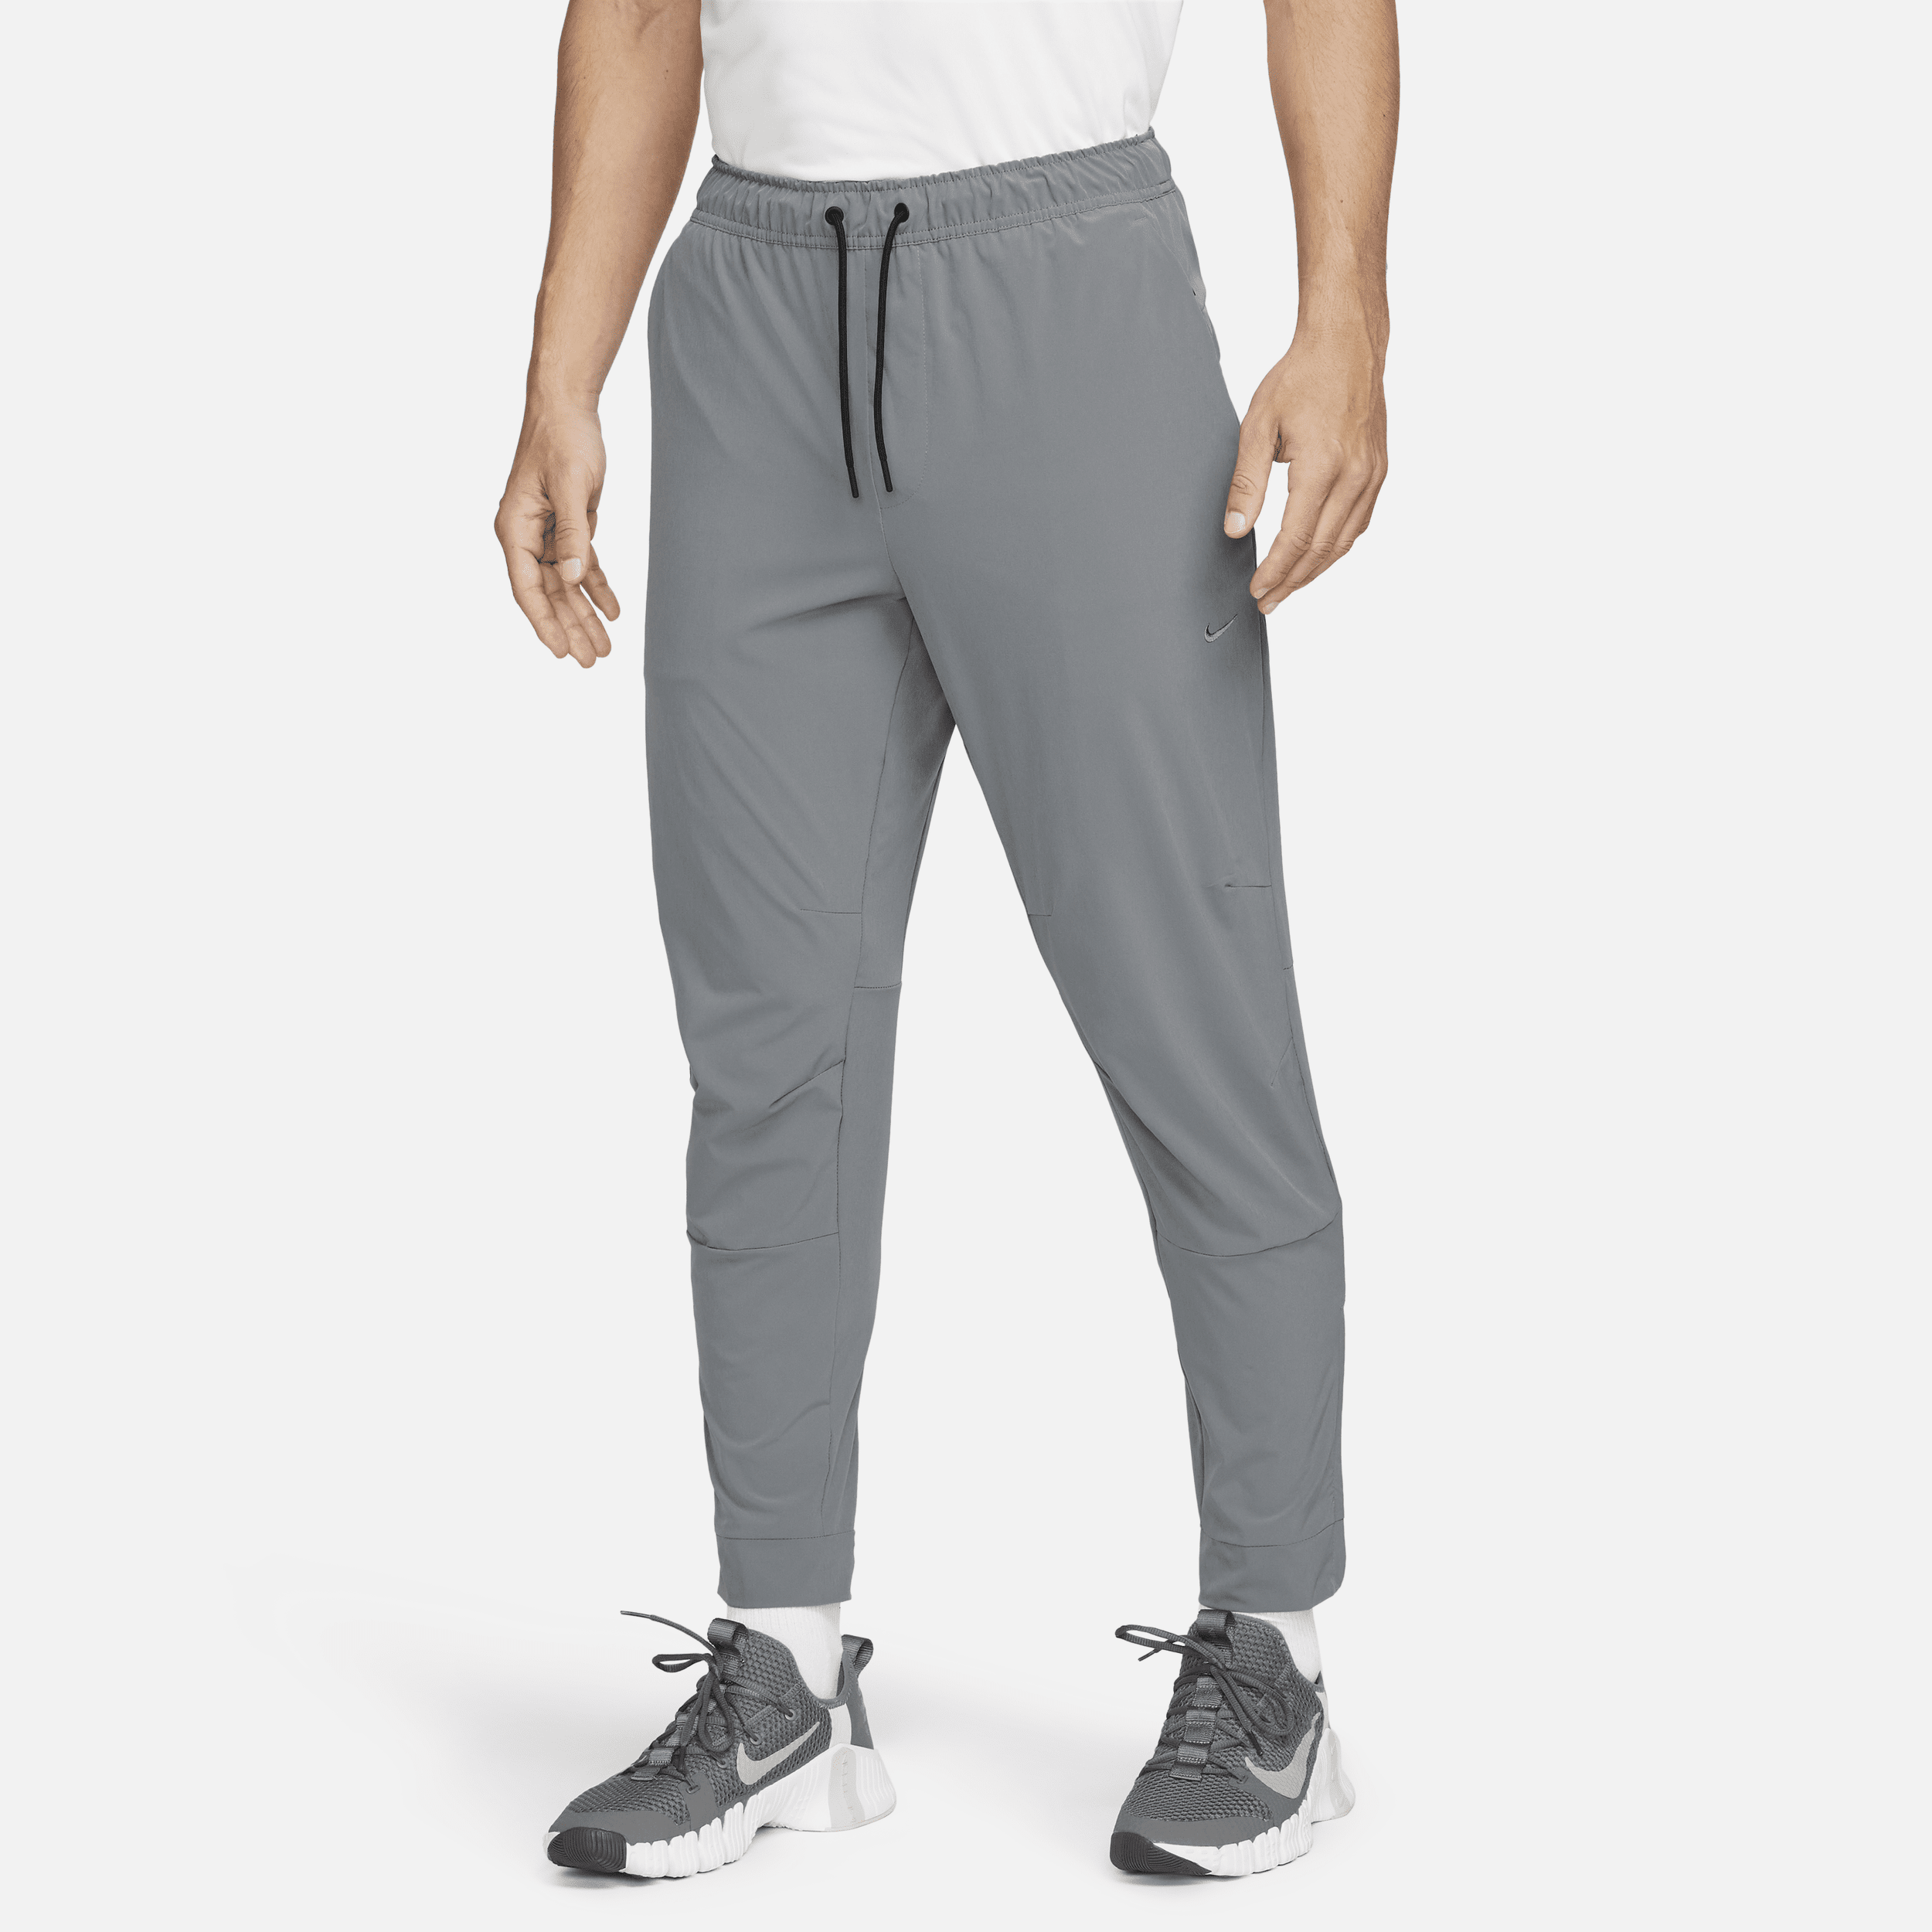 Pantaloni versatili con zip sul bordo Dri-FIT Nike Unlimited – Uomo - Grigio